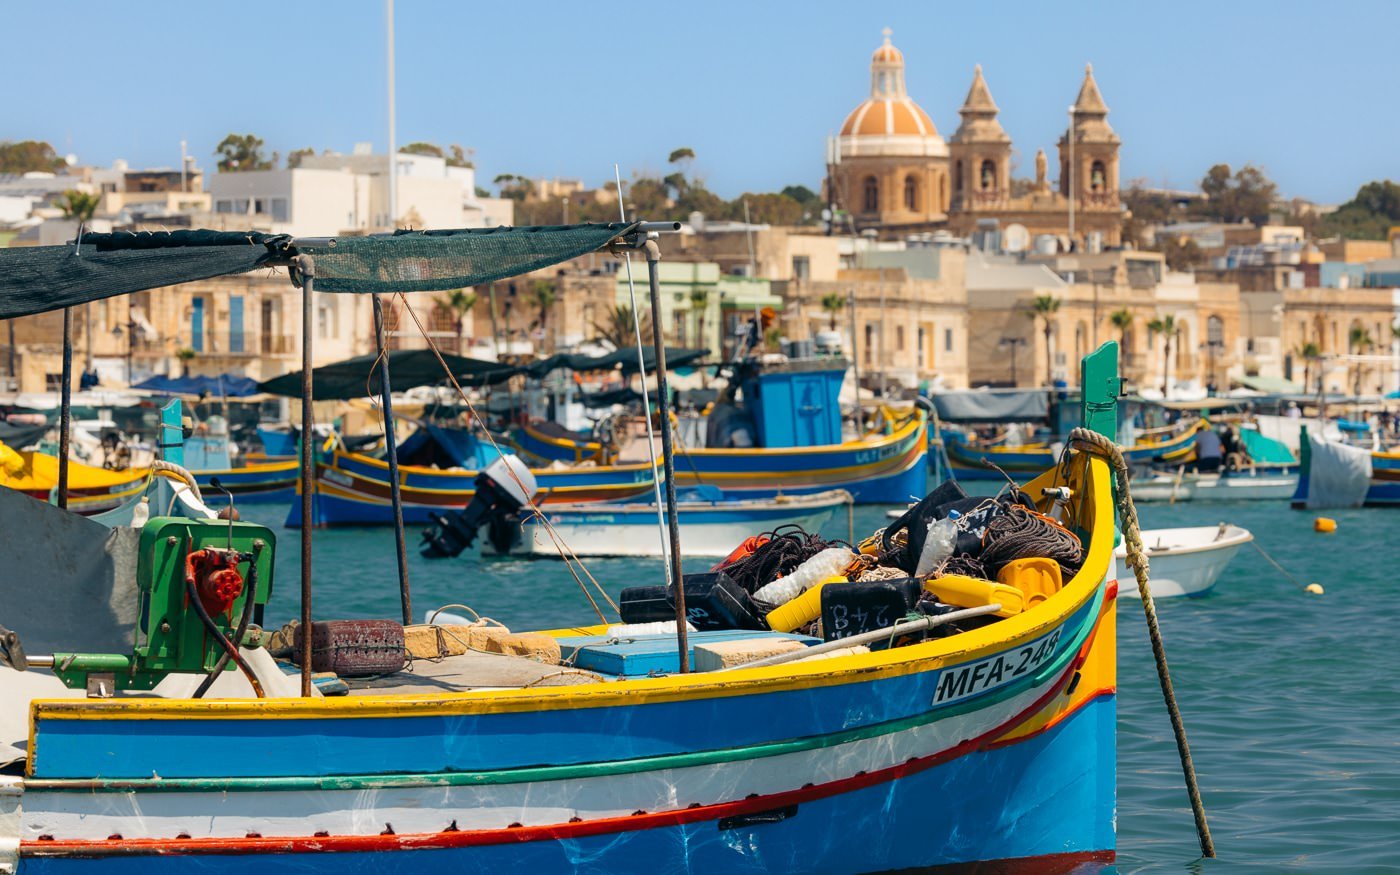 8 Things to do in Marsaxlokk Malta (Colorful Fishing Village)